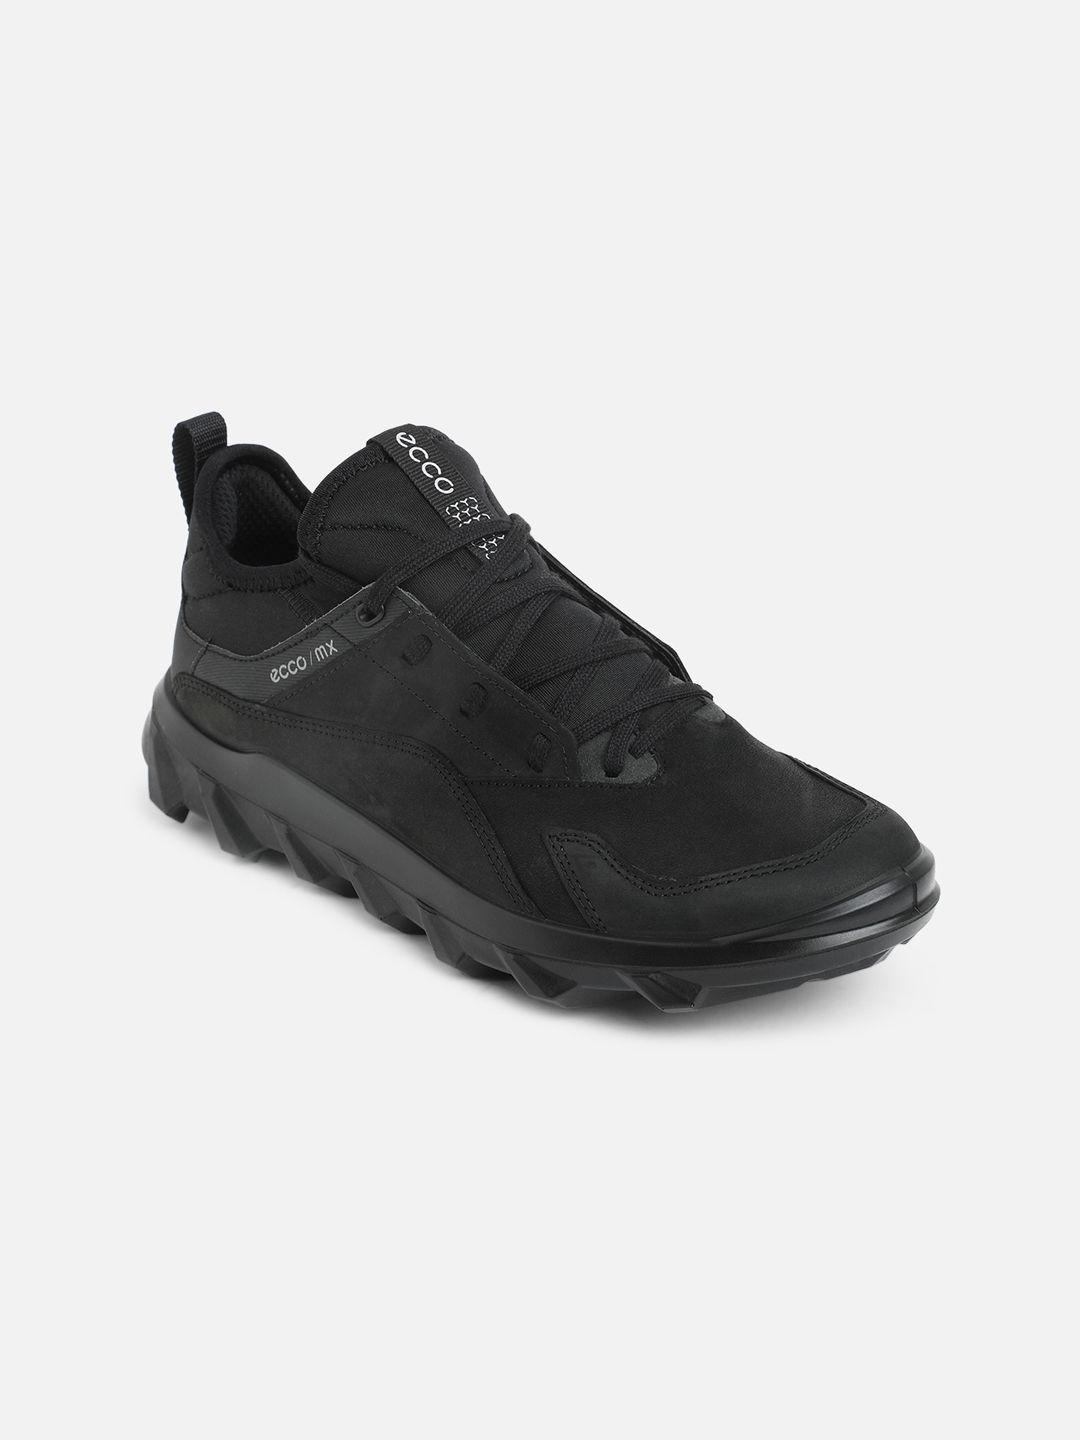 ecco women black outdoor leather trekking shoes